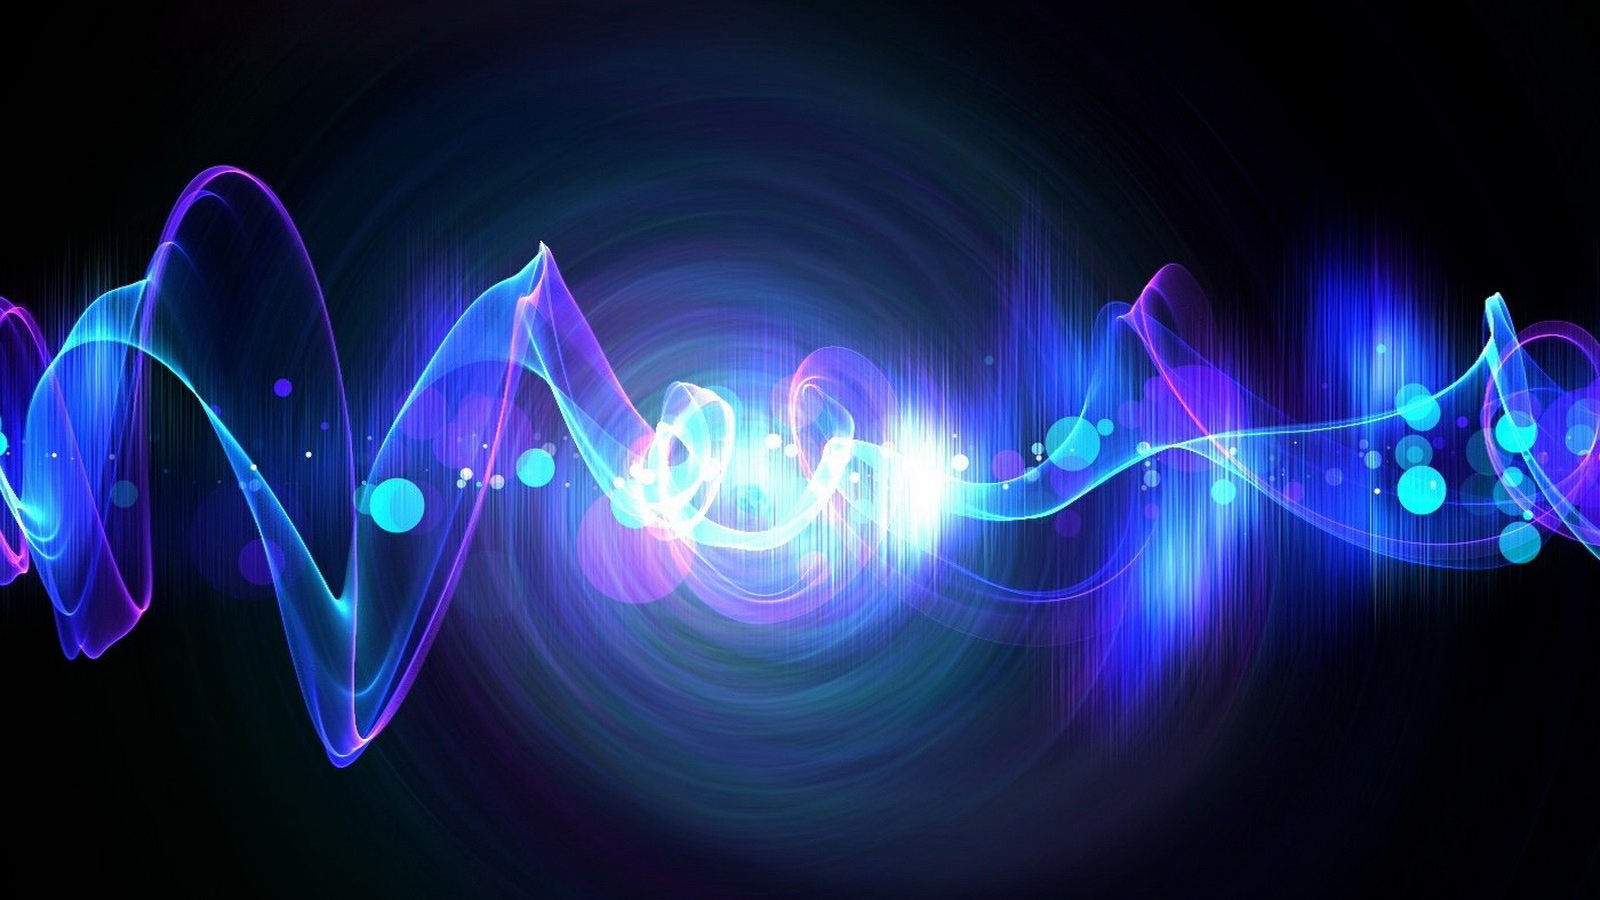 La tecnologia audio 8D, musica intorno a noi da 8 dimensioni